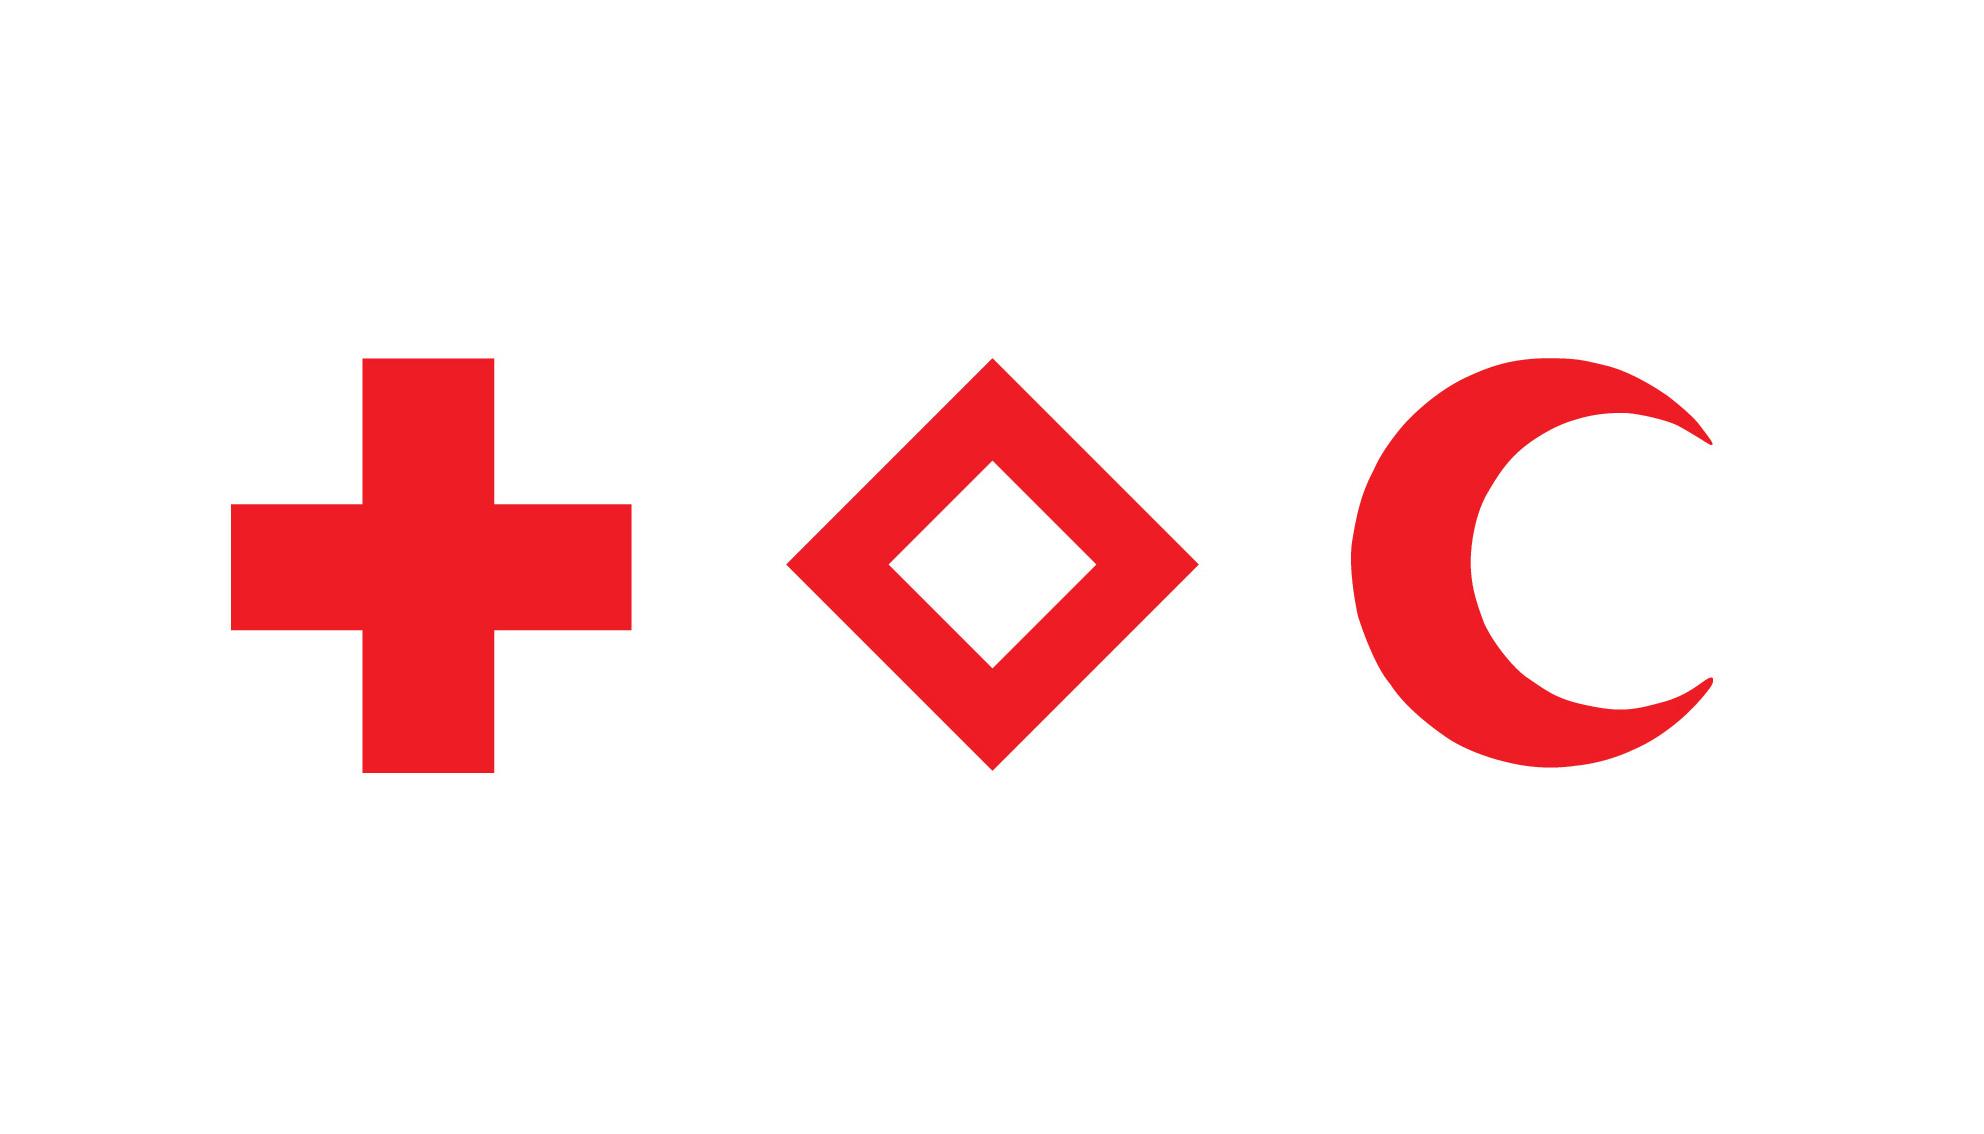 Grafica con i tre emblemi della Croce Rossa, del Cristallo Rosso e della Mezzaluna Rossa.